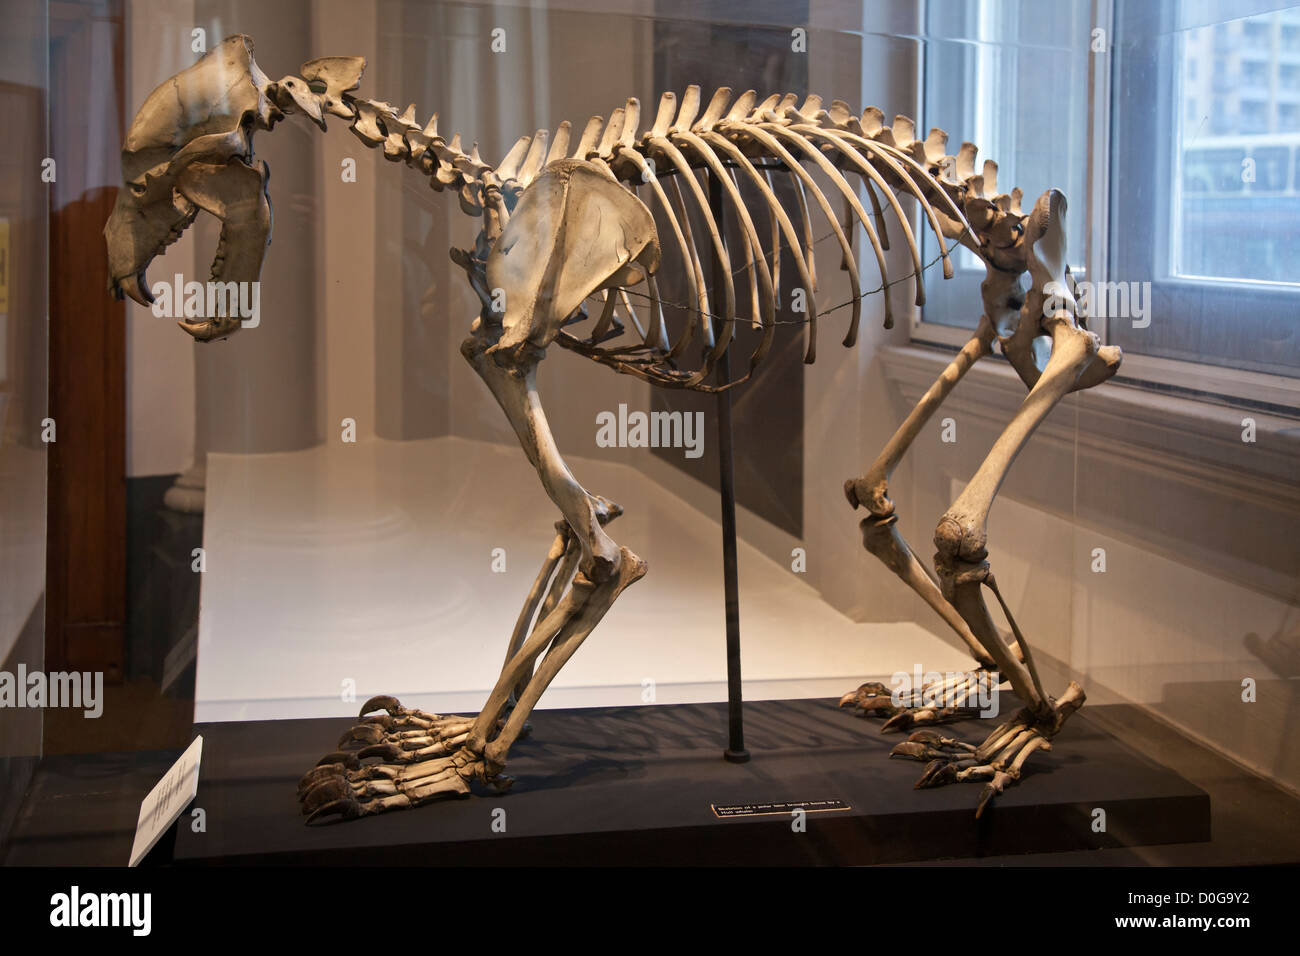 Skelett eines Eisbären in einem Glaskasten angezeigt Stockfoto